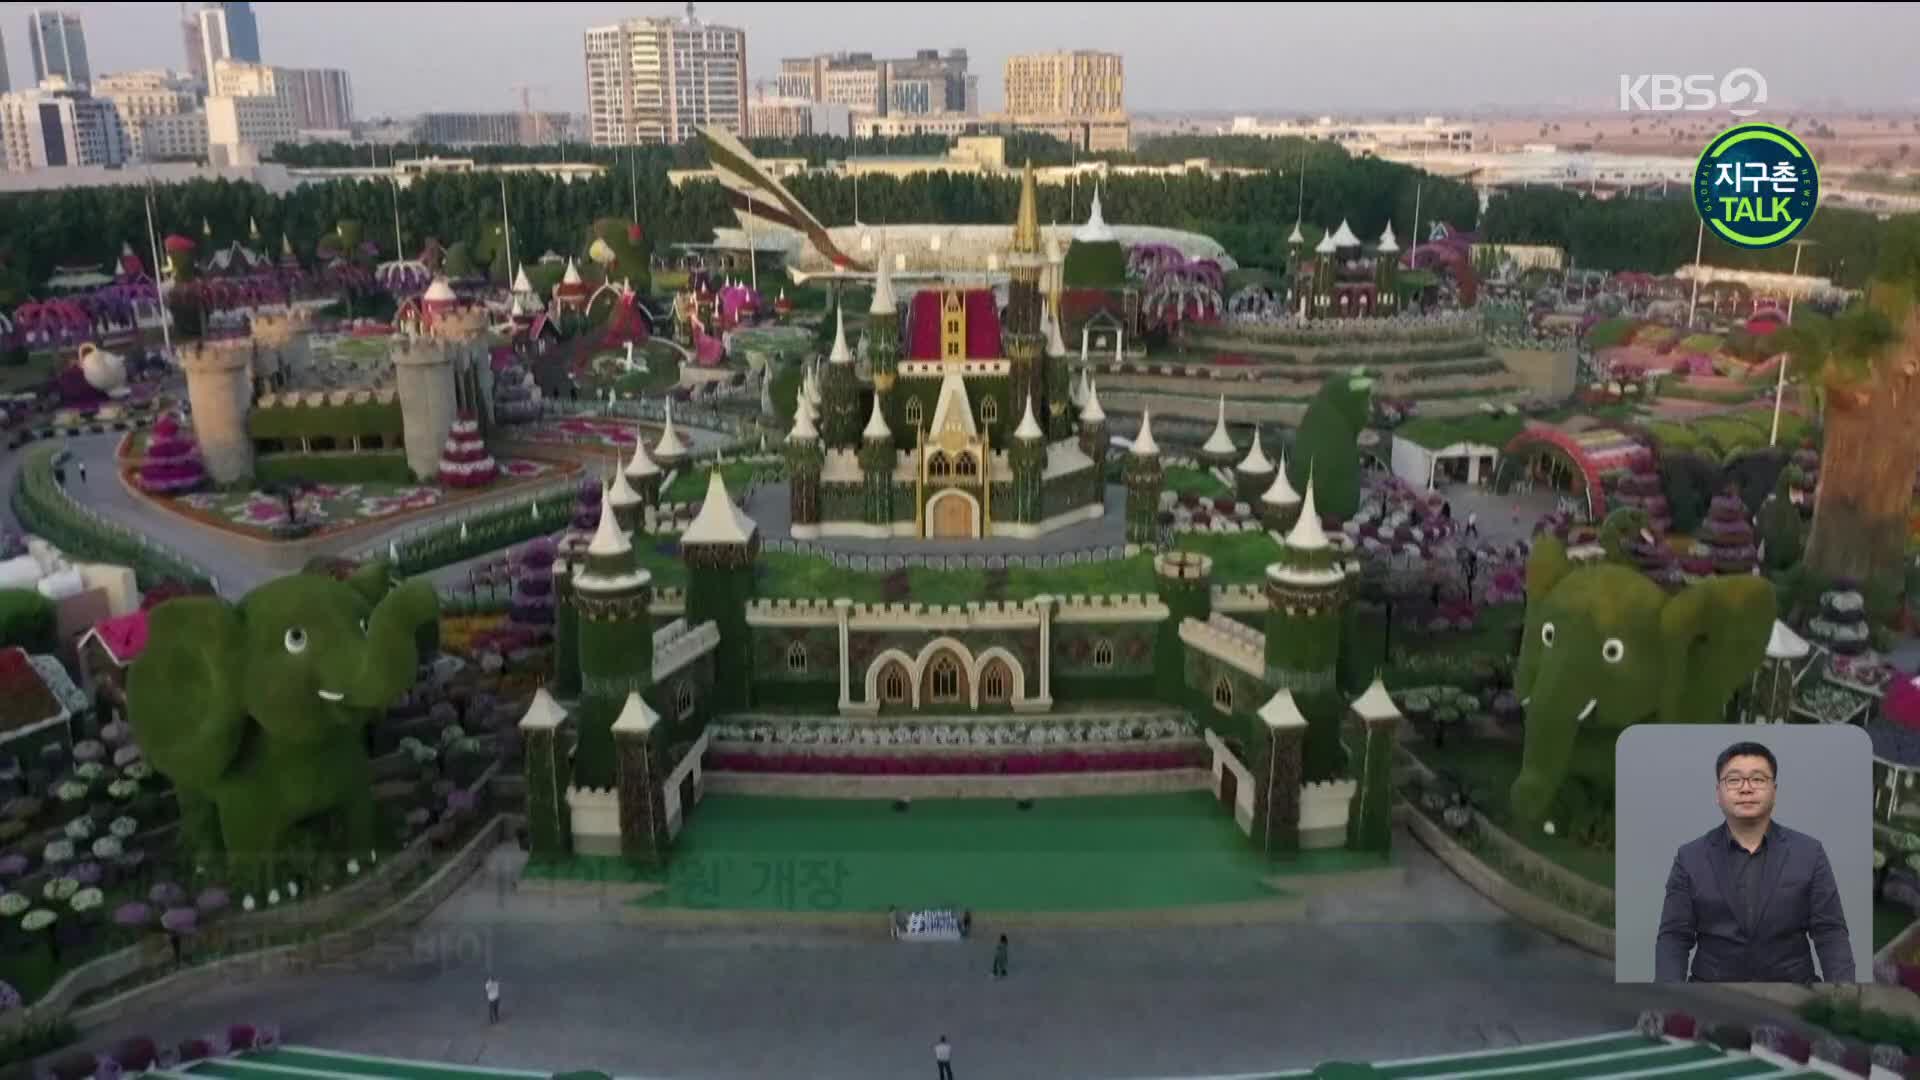 [지구촌 Talk] 두바이, 세계 최대 꽃밭 ‘기적의 정원’ 개장